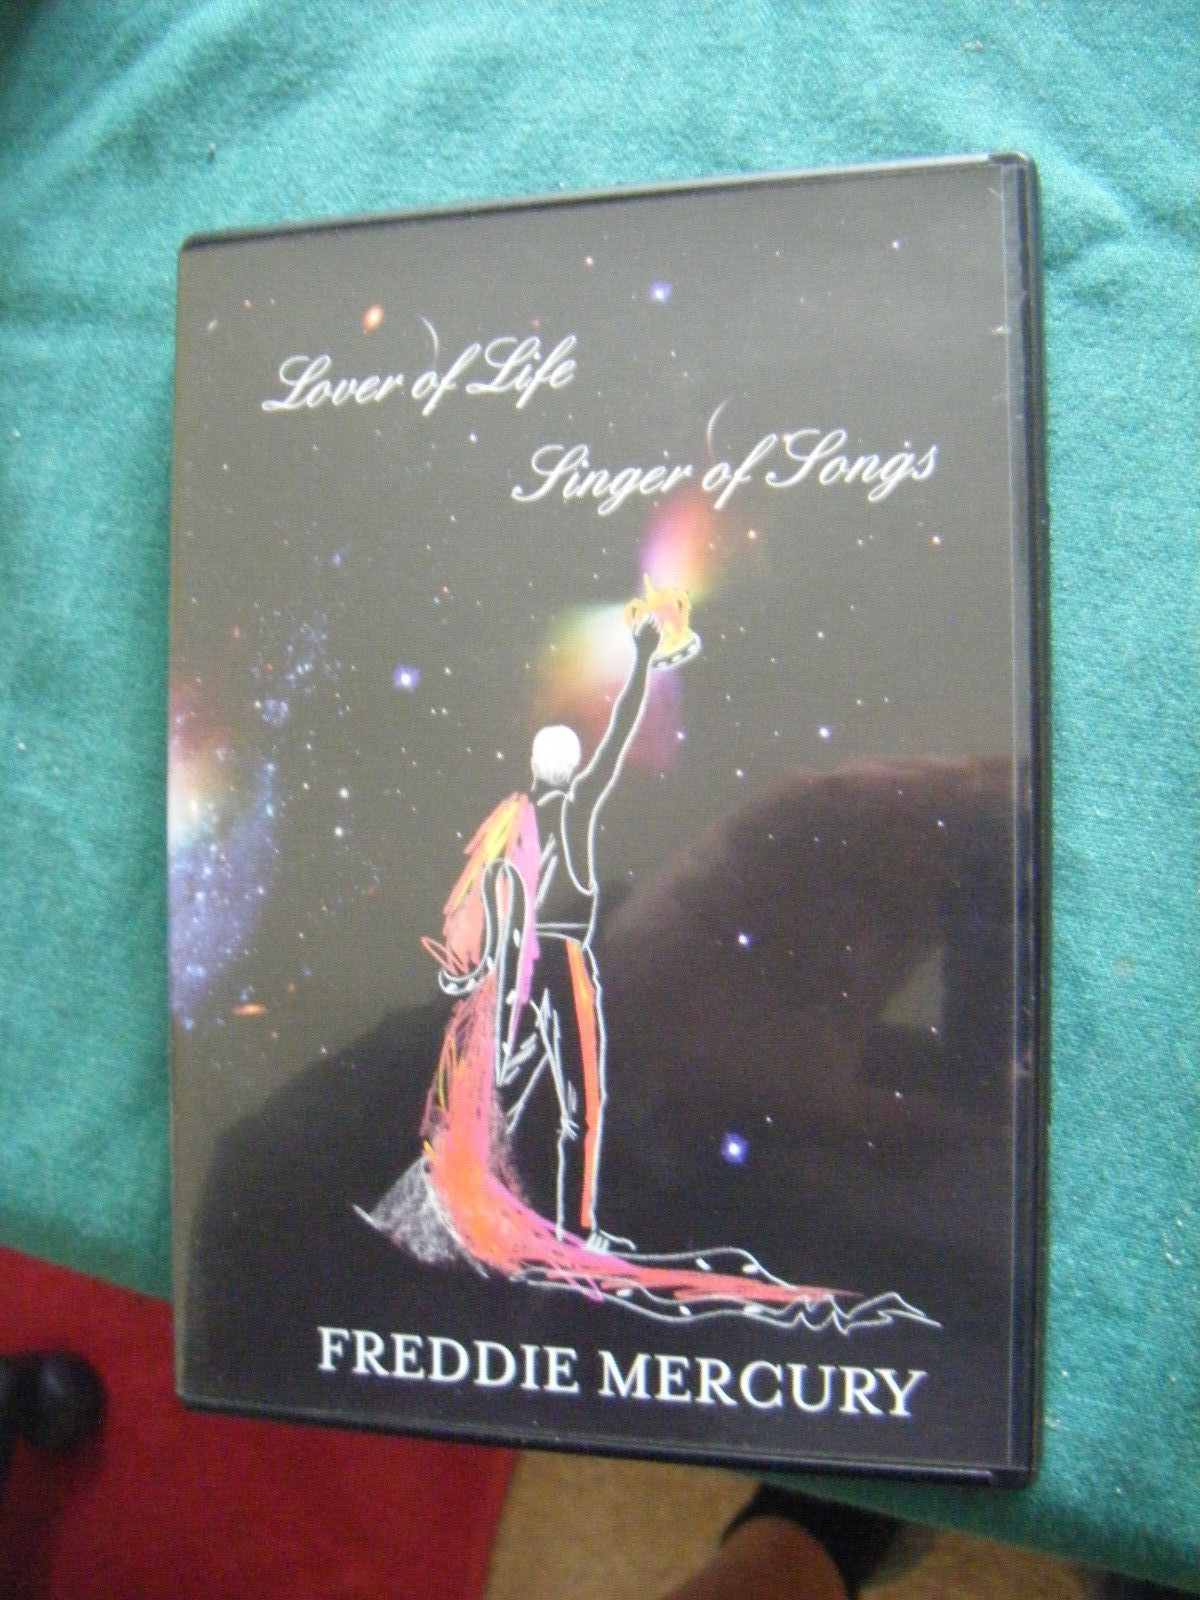 Freddie Mercury-Lover Of Life Singer Of Songs (DVD, 2006, 2-Disc Set)/BOOKLET-VG